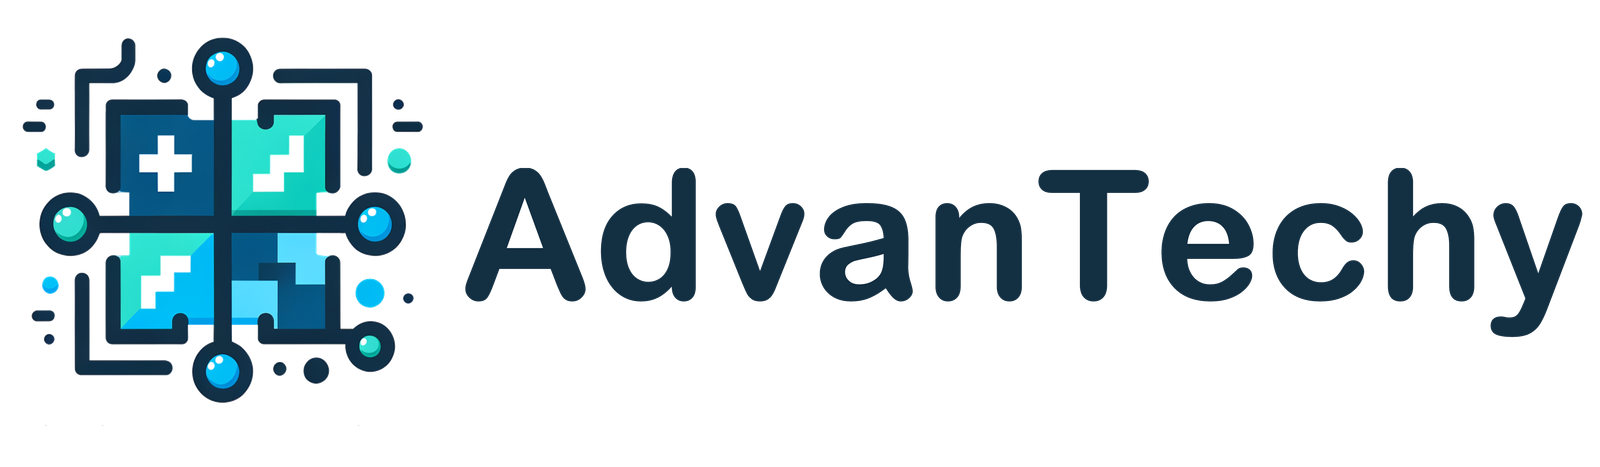 advantechy.com